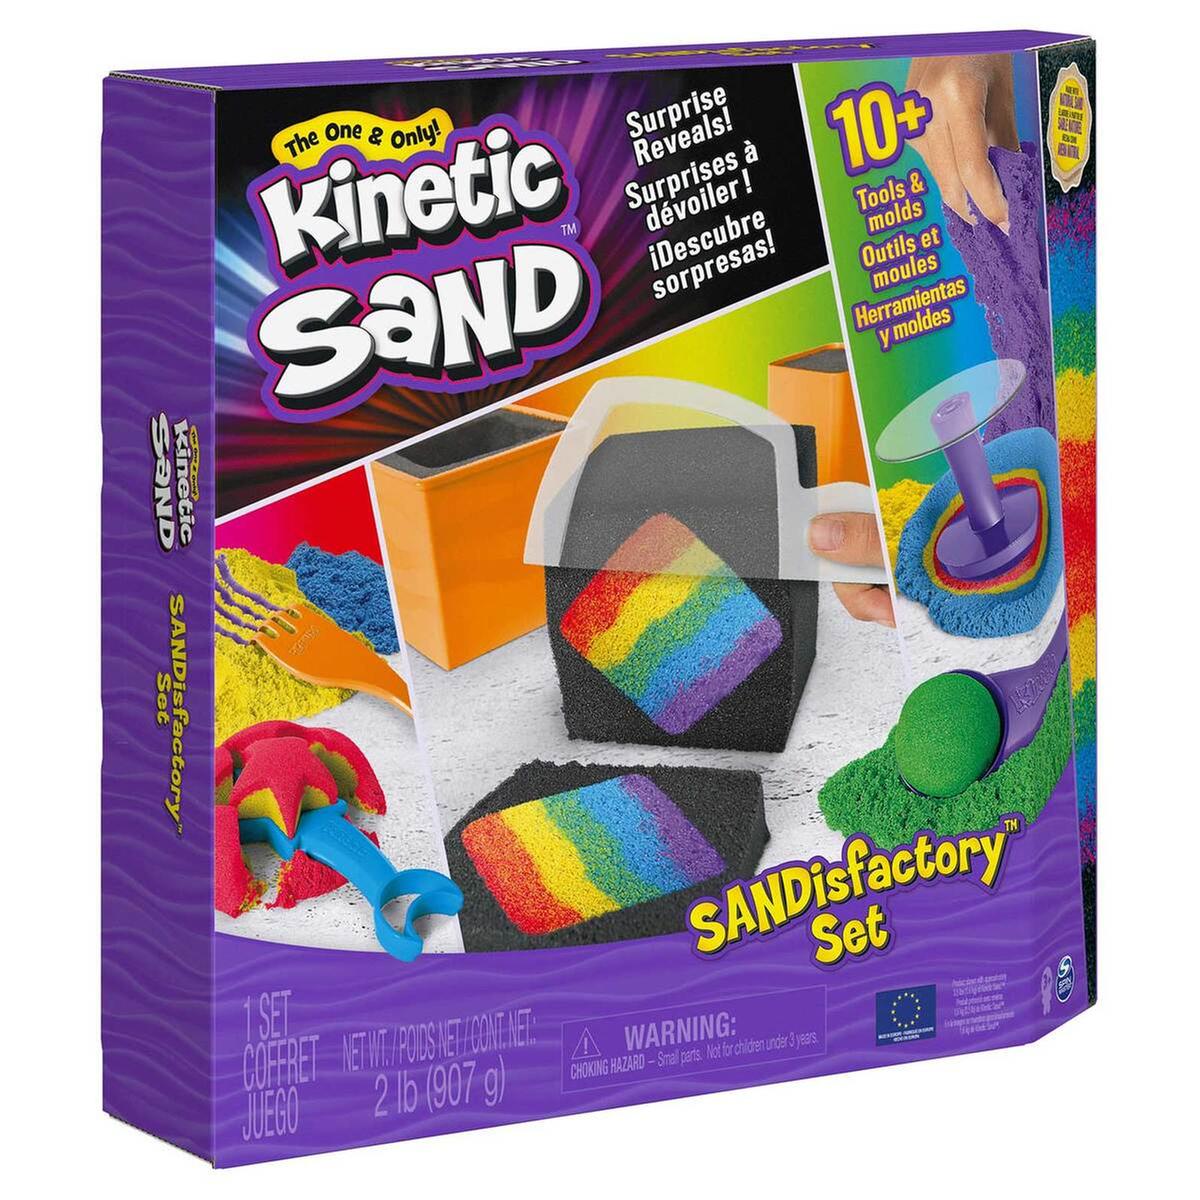 Kinetic Sand - Conjunto Sandisfactory Areia Mágica | Areia cinética | Loja  de brinquedos e videojogos Online Toysrus